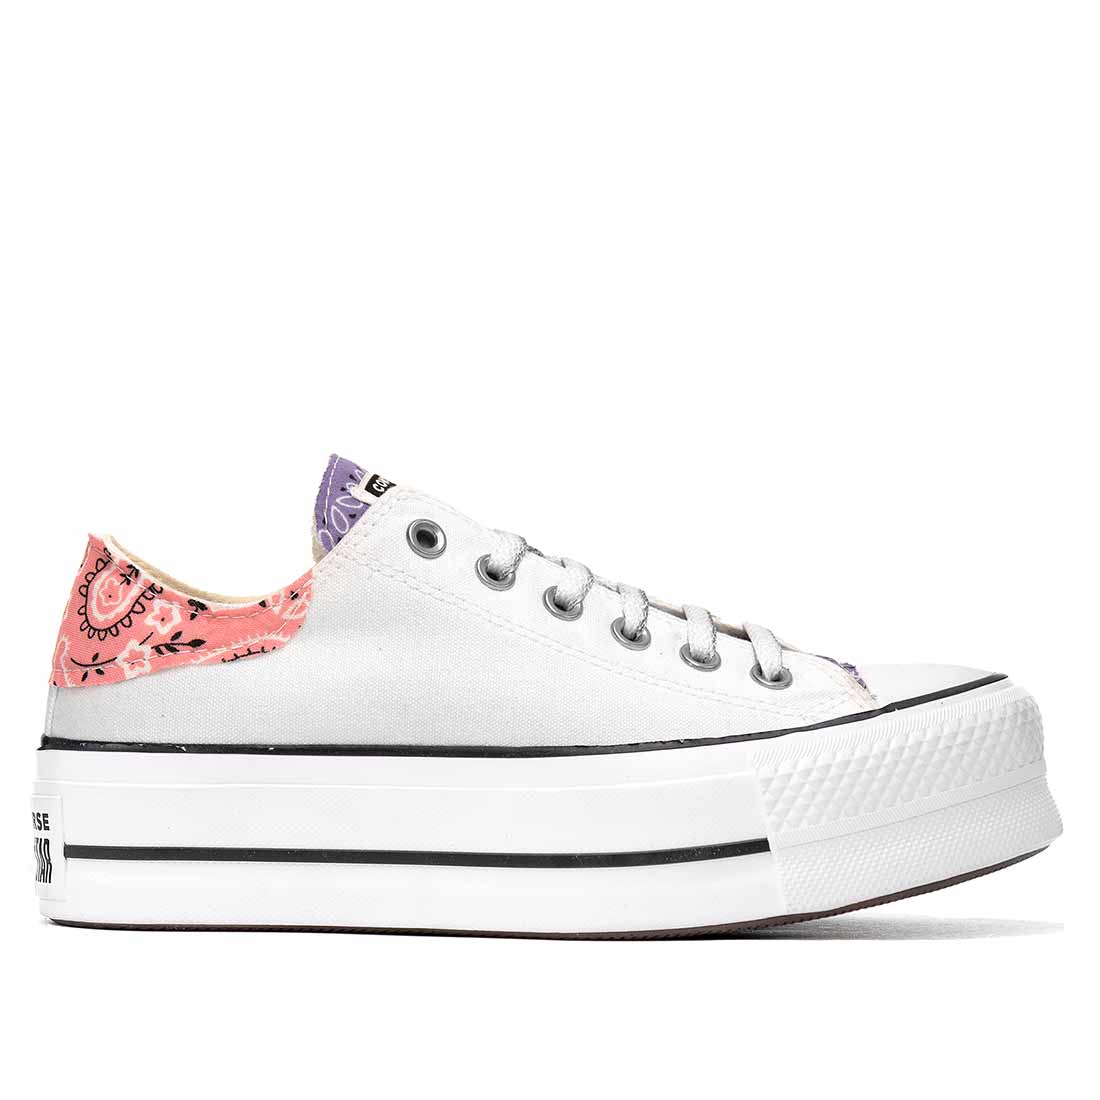 sneakers converse all star con bandana viola e rosa con suola alta colore bianche